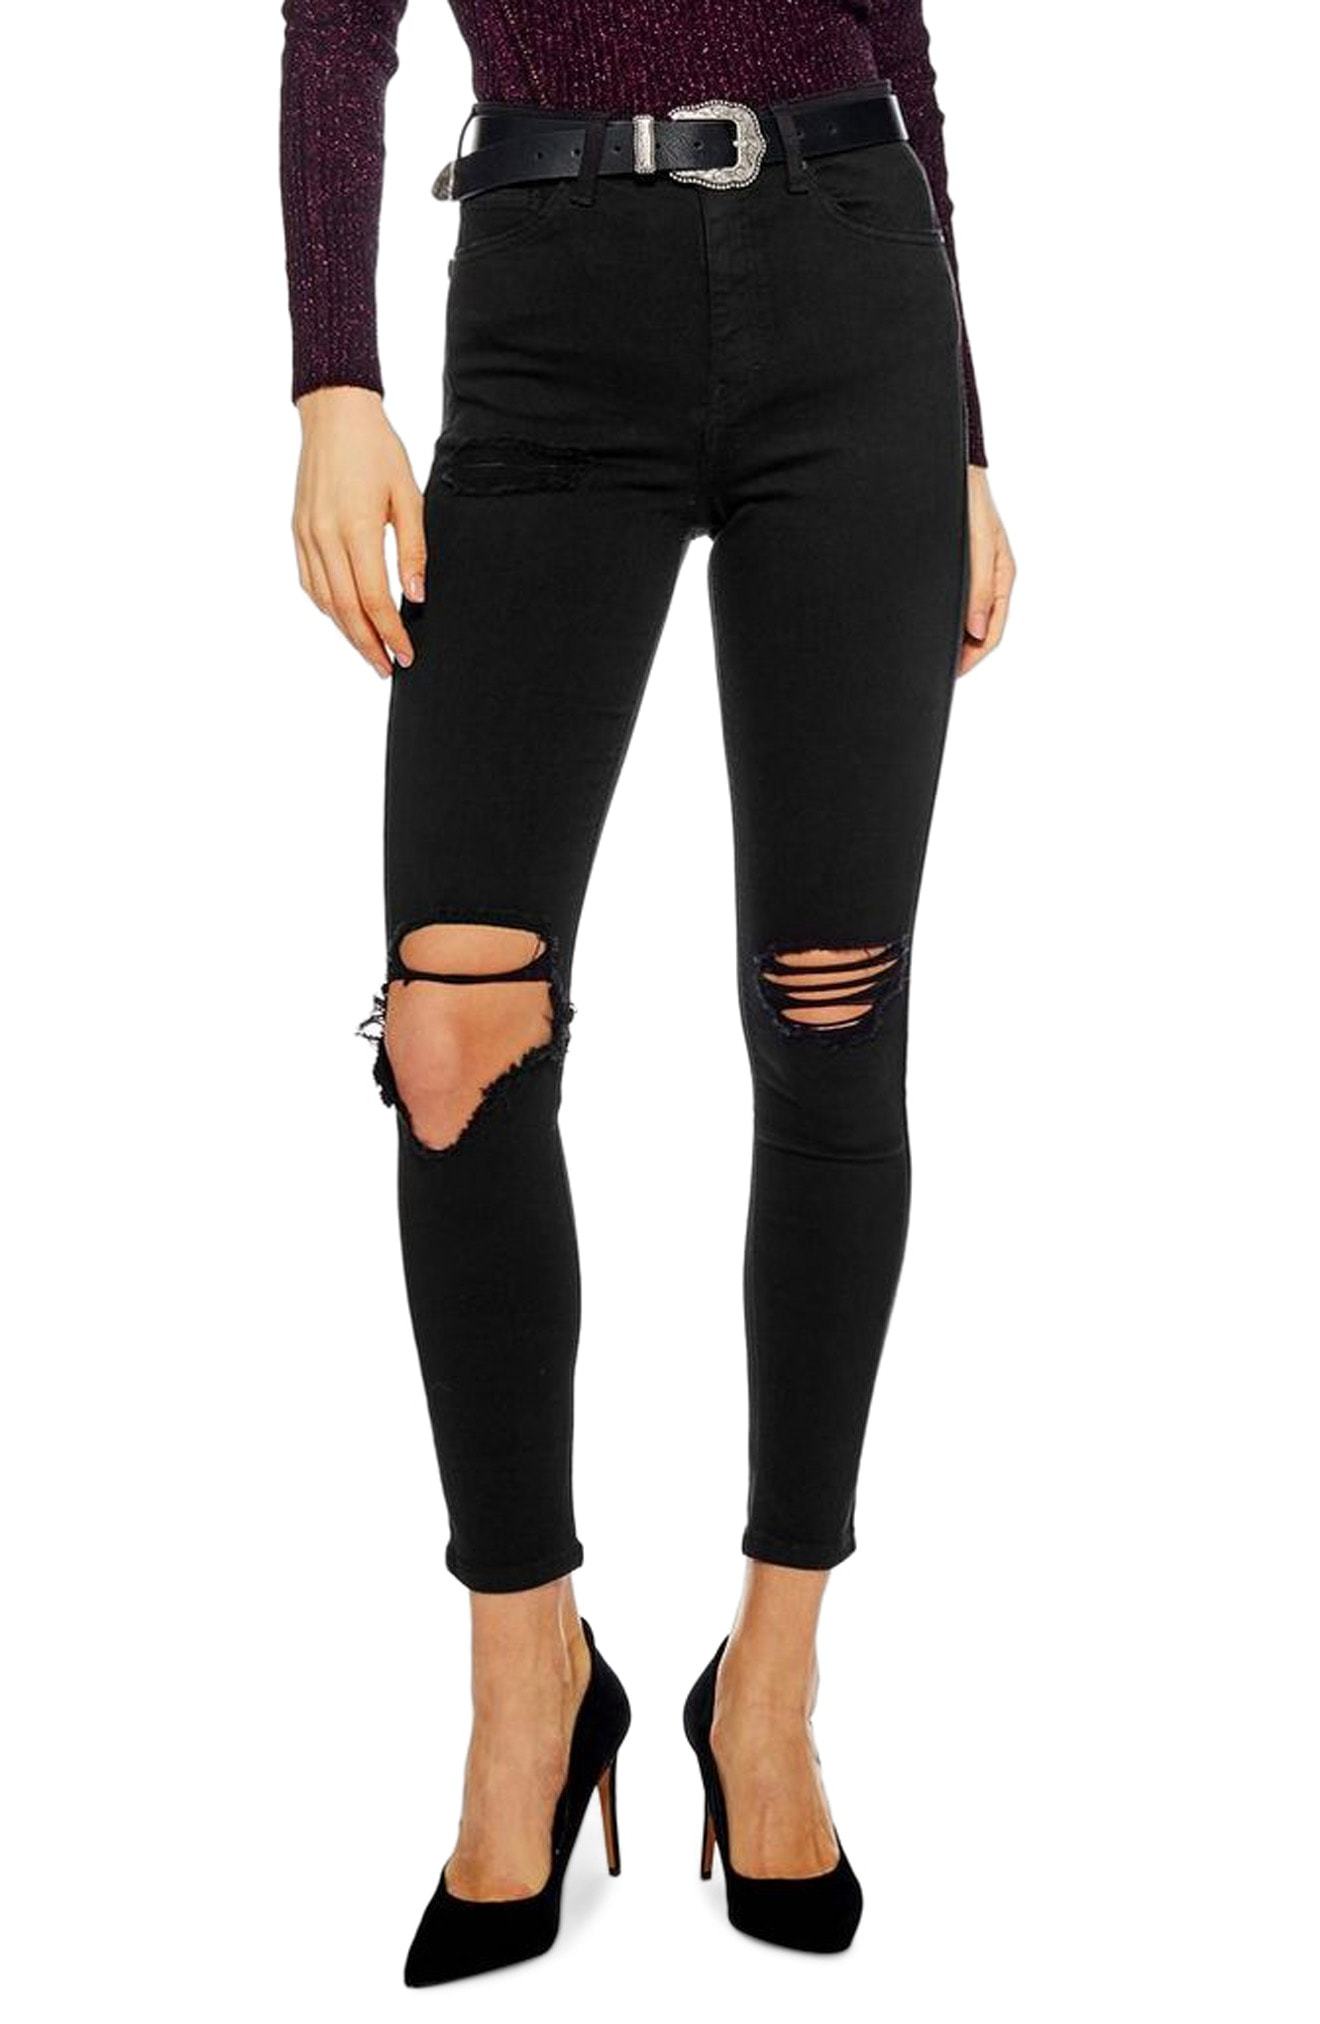 Gade regulere Pebish Topshop Jamie Wing Rip Skinny Jeans, $80 | Nordstrom | Lookastic